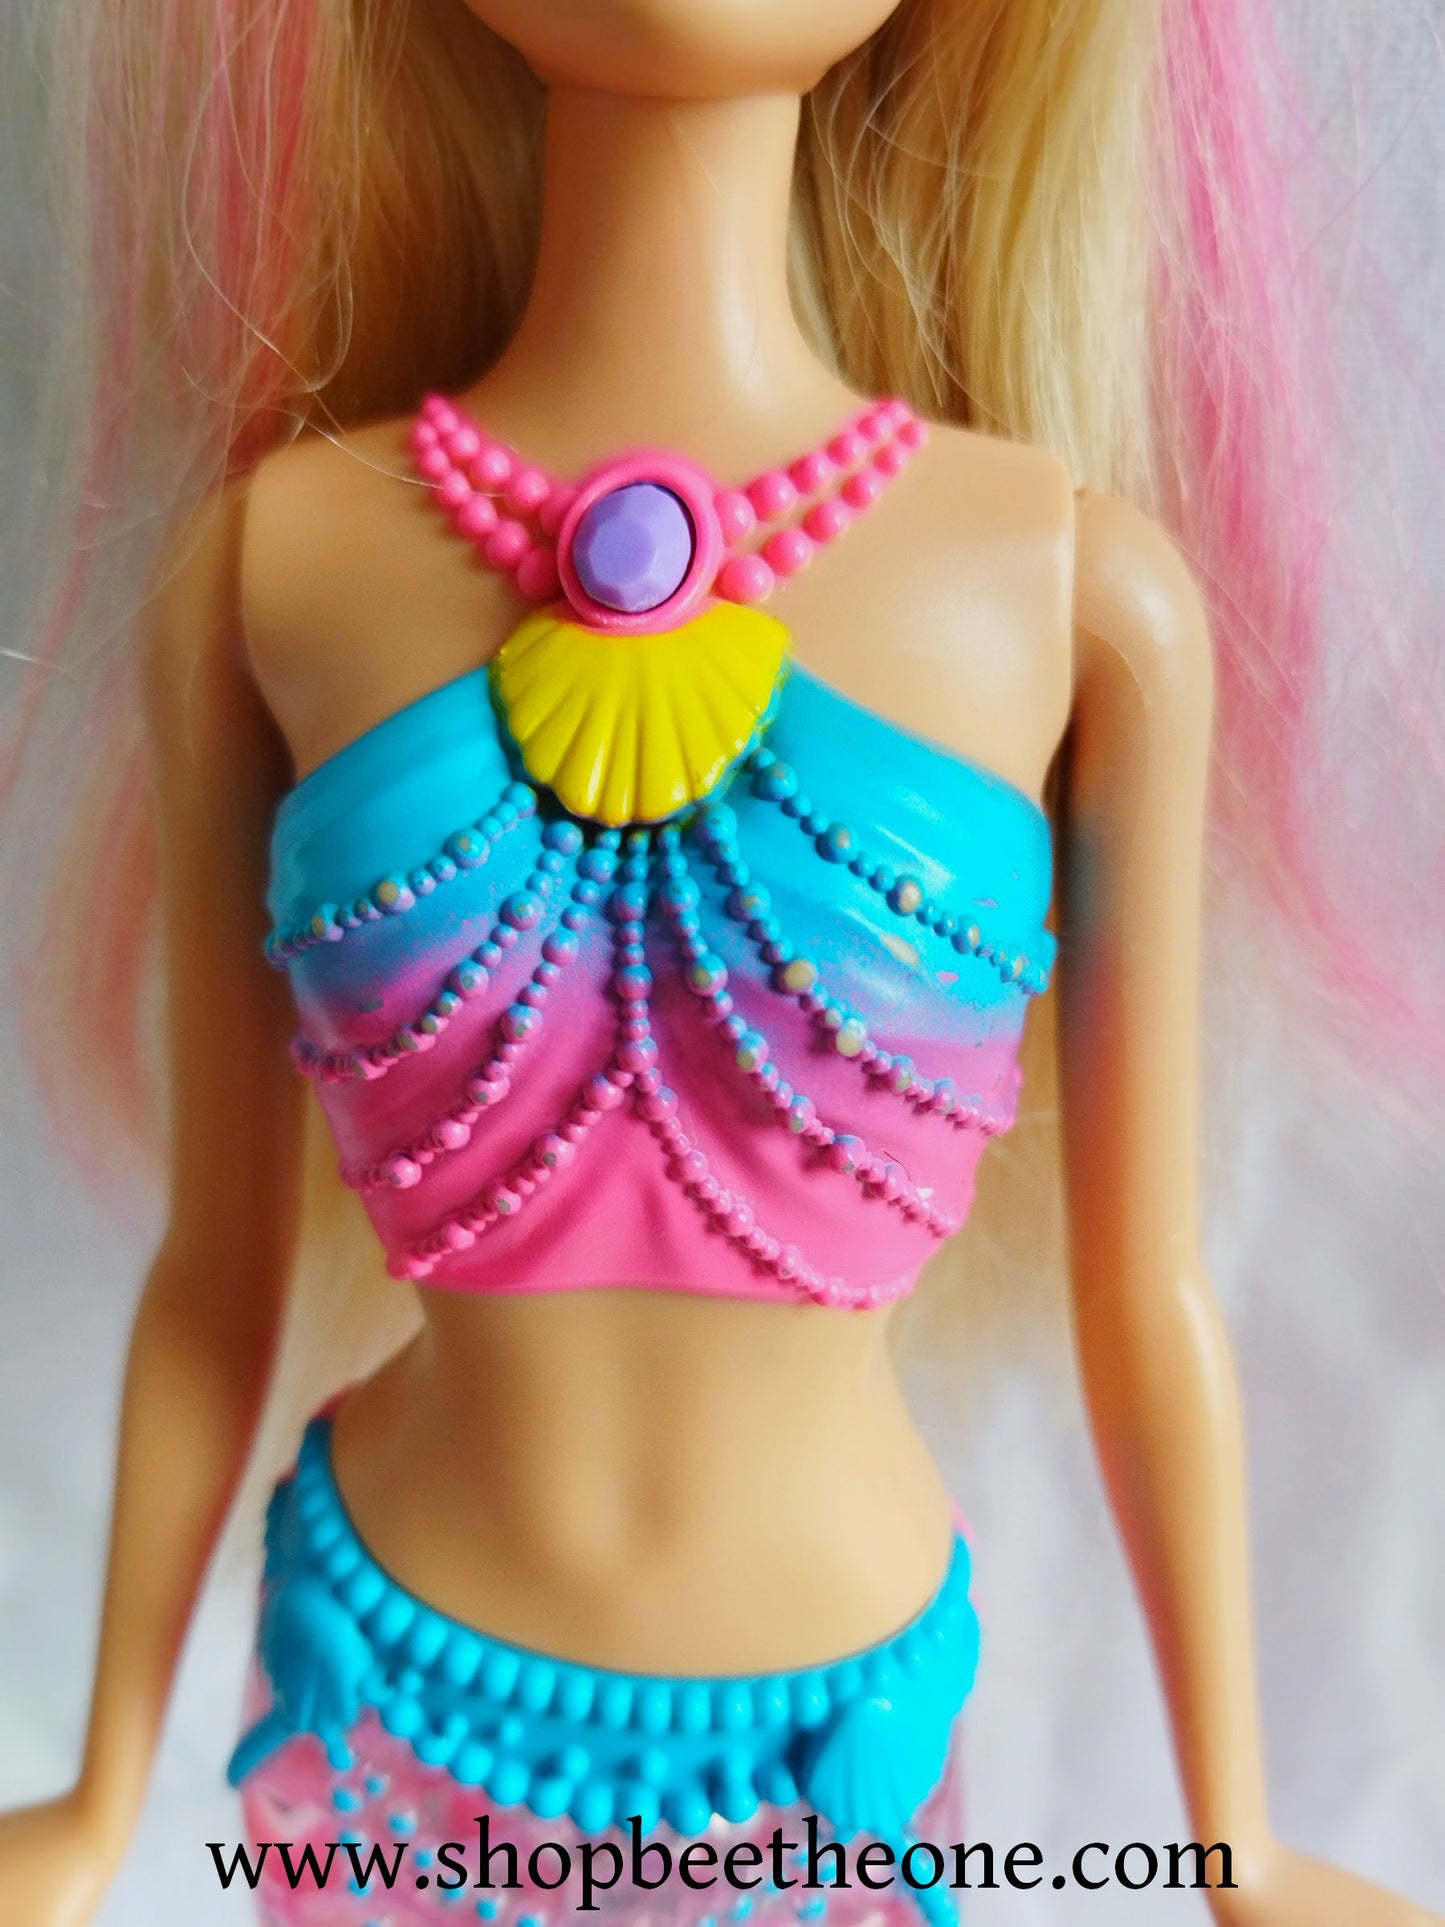 Barbie Dreamtopia Rainbow Lights Mermaid - Mattel 2015 - Poupée lumineuse